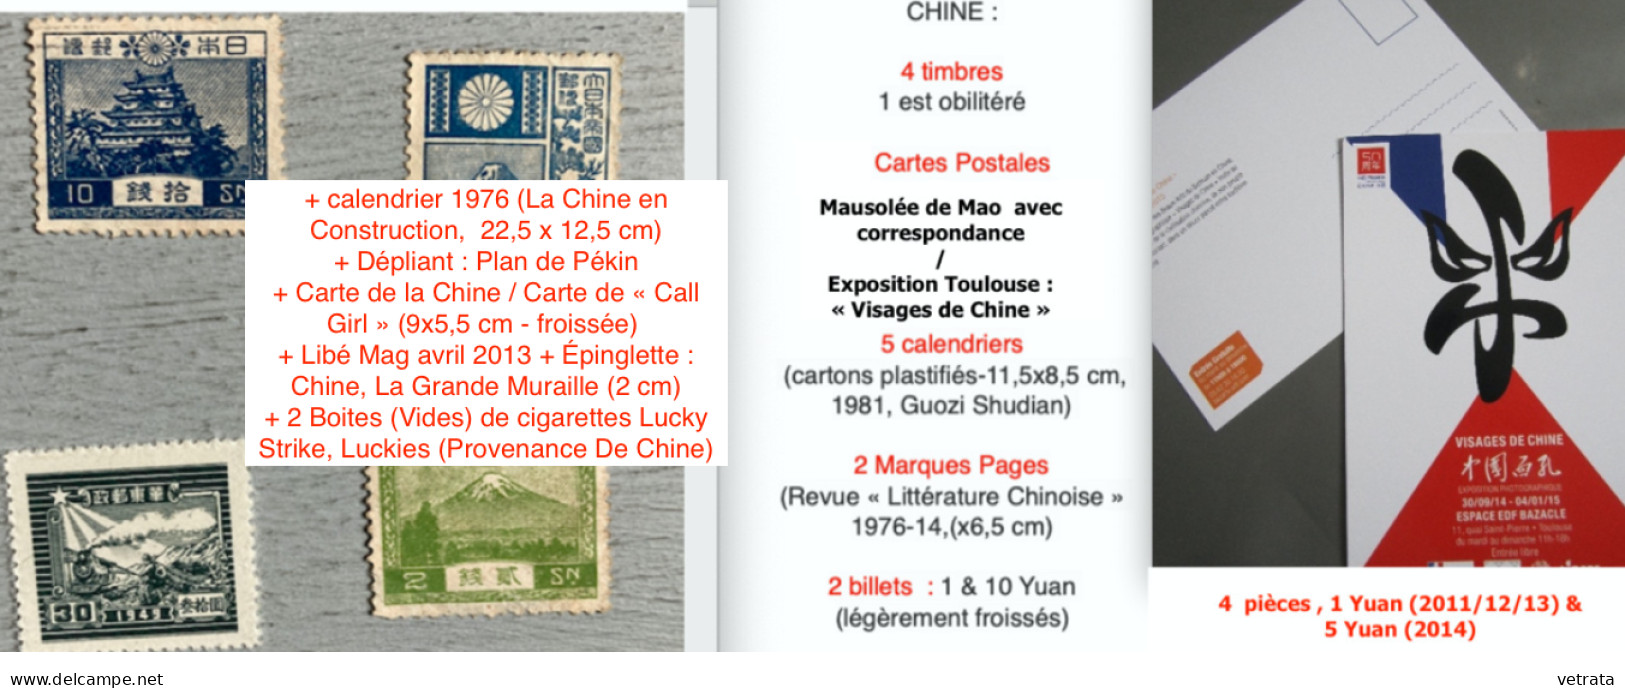 CHINE : 1 Album, 1 Guide & 1 Revue. CHINE (Larousse-Monde & Voyages-1988) / Guide Hachette Visa : À Pékin & En Chine, 19 - Wholesale, Bulk Lots